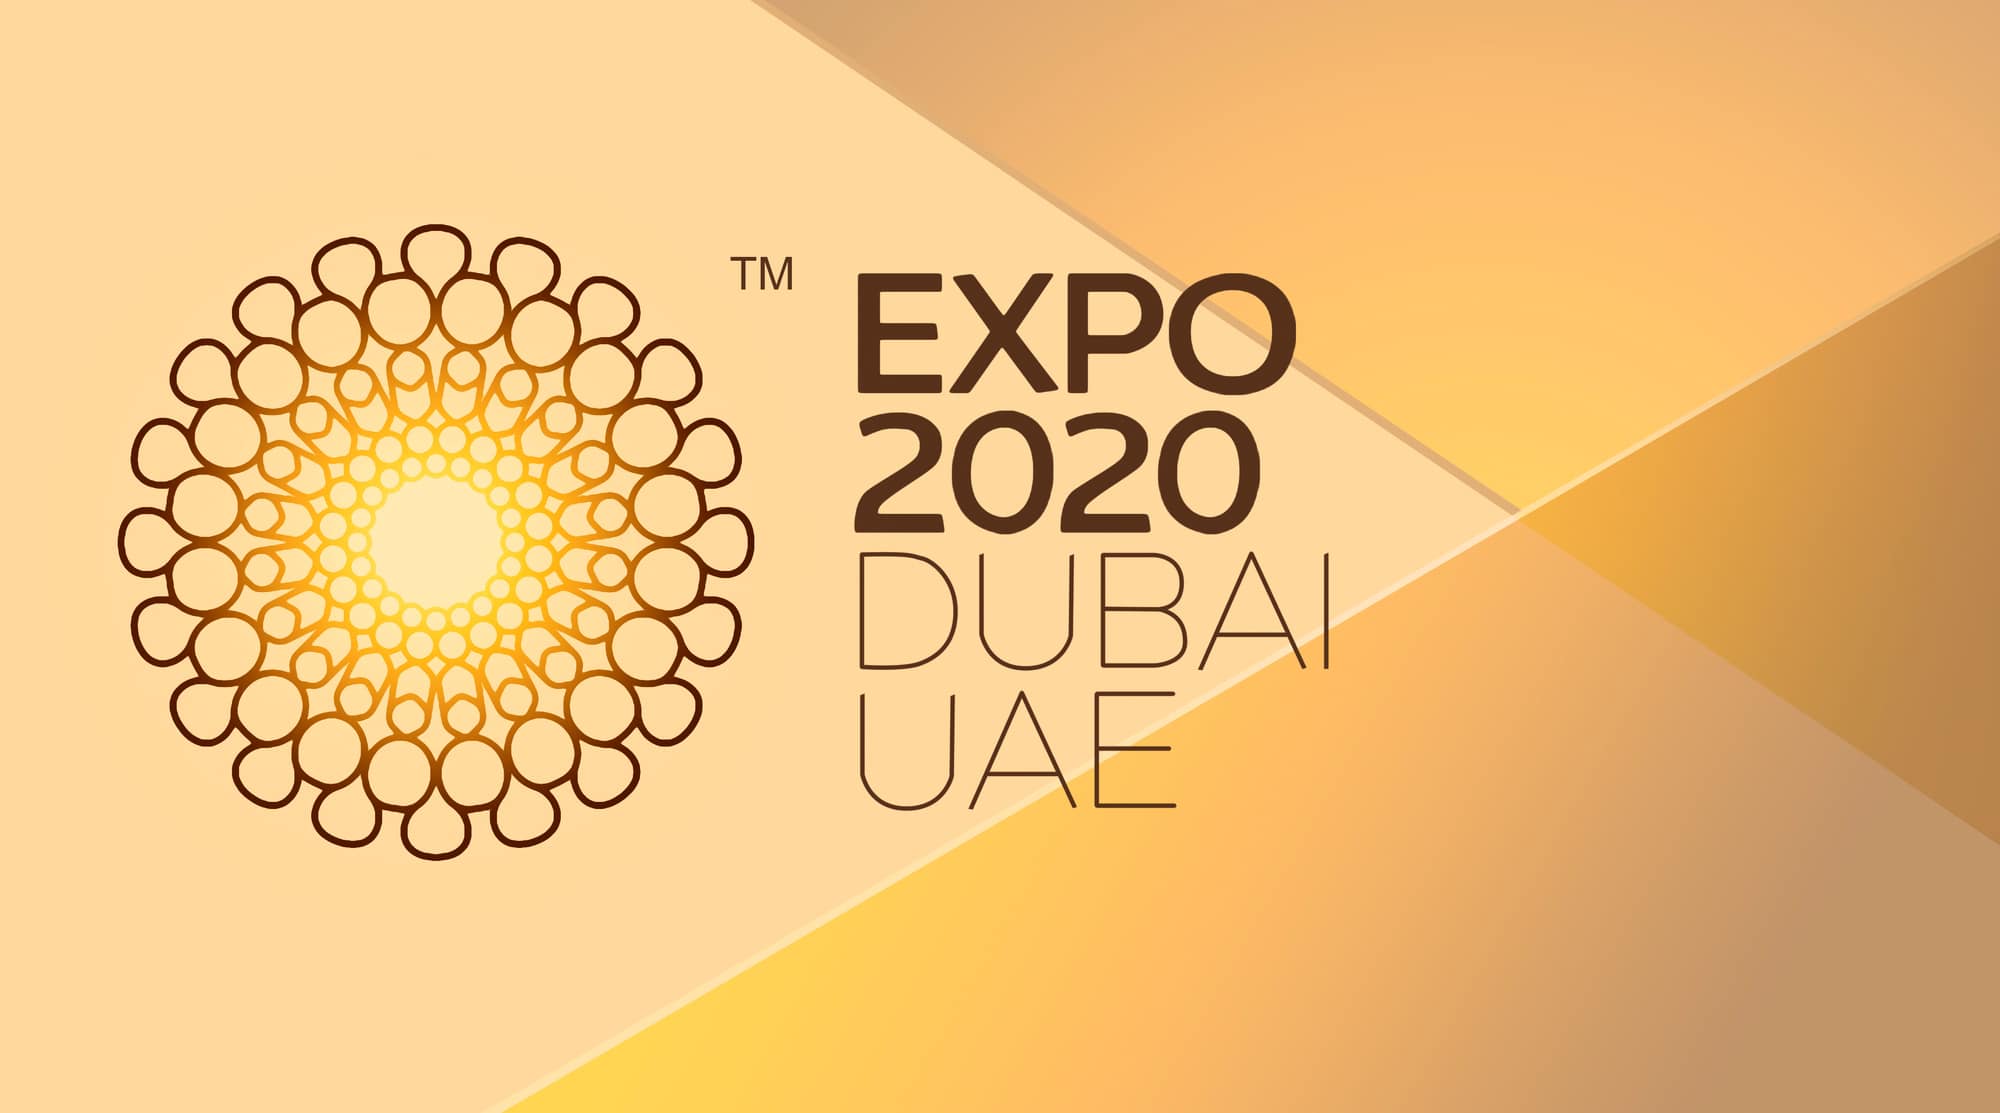 EXPO 2020 opening door of opportunities